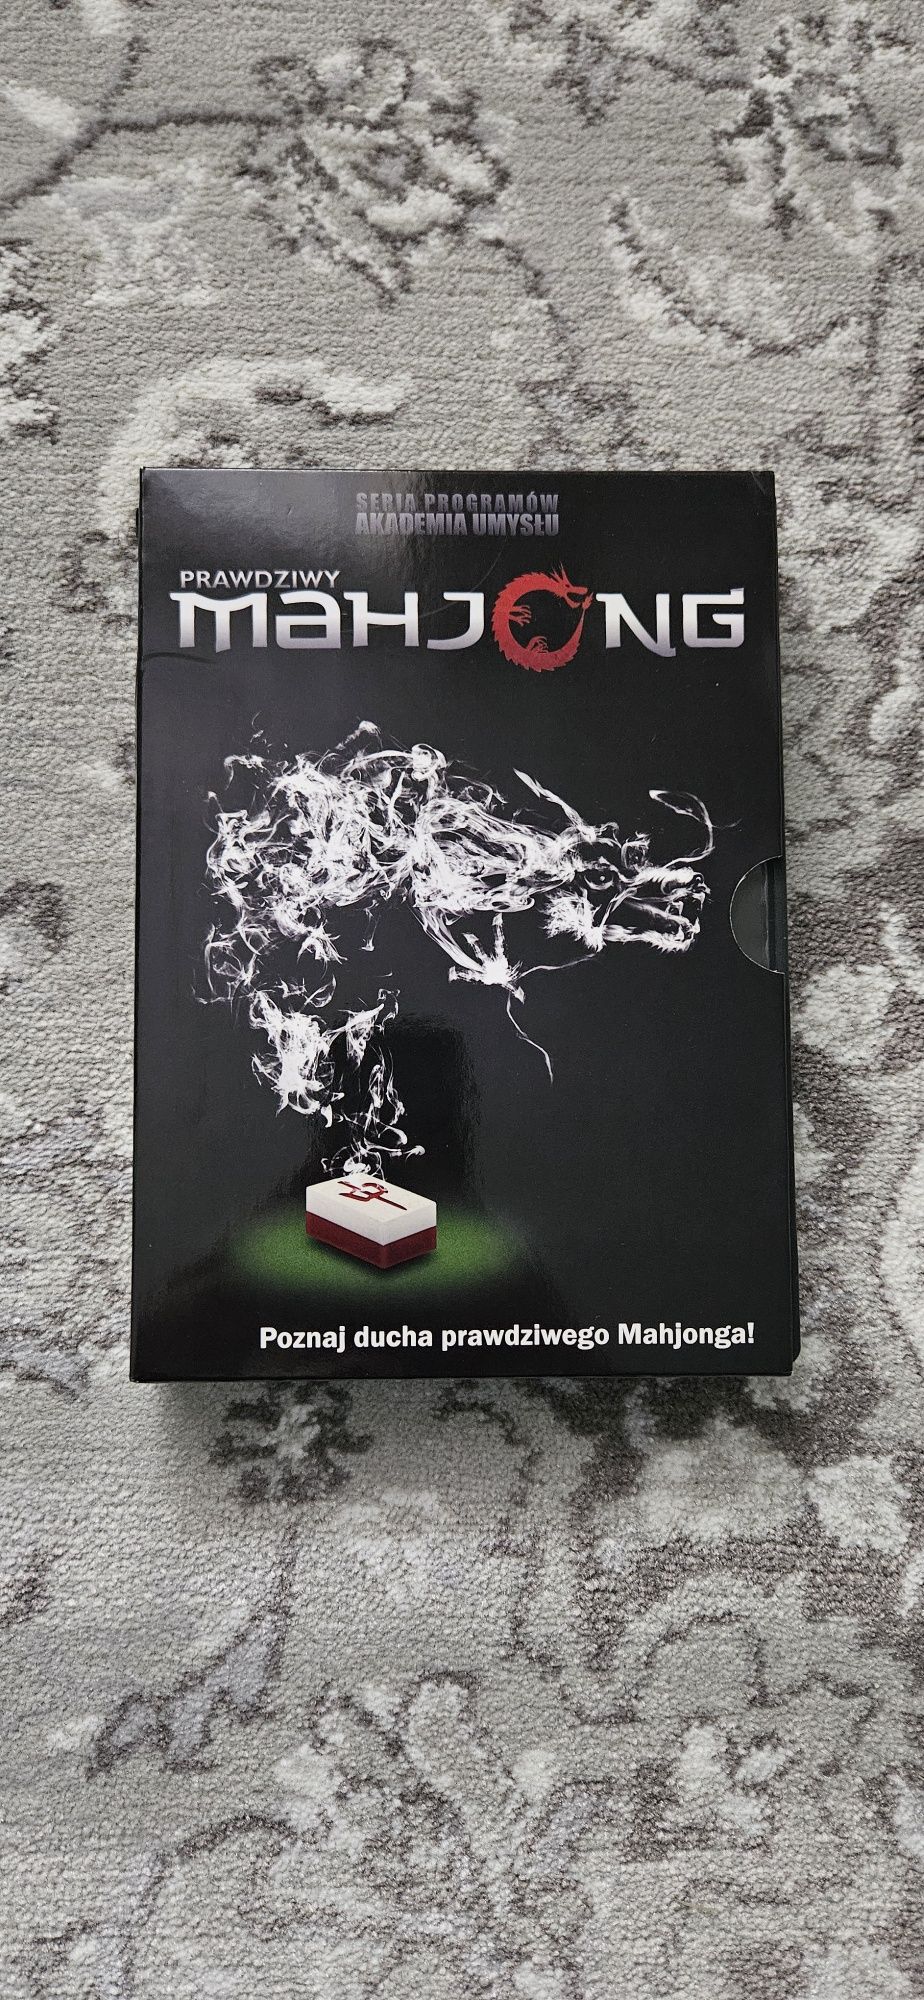 Prawdziwy Mahjong gra na PC akademia umysłów